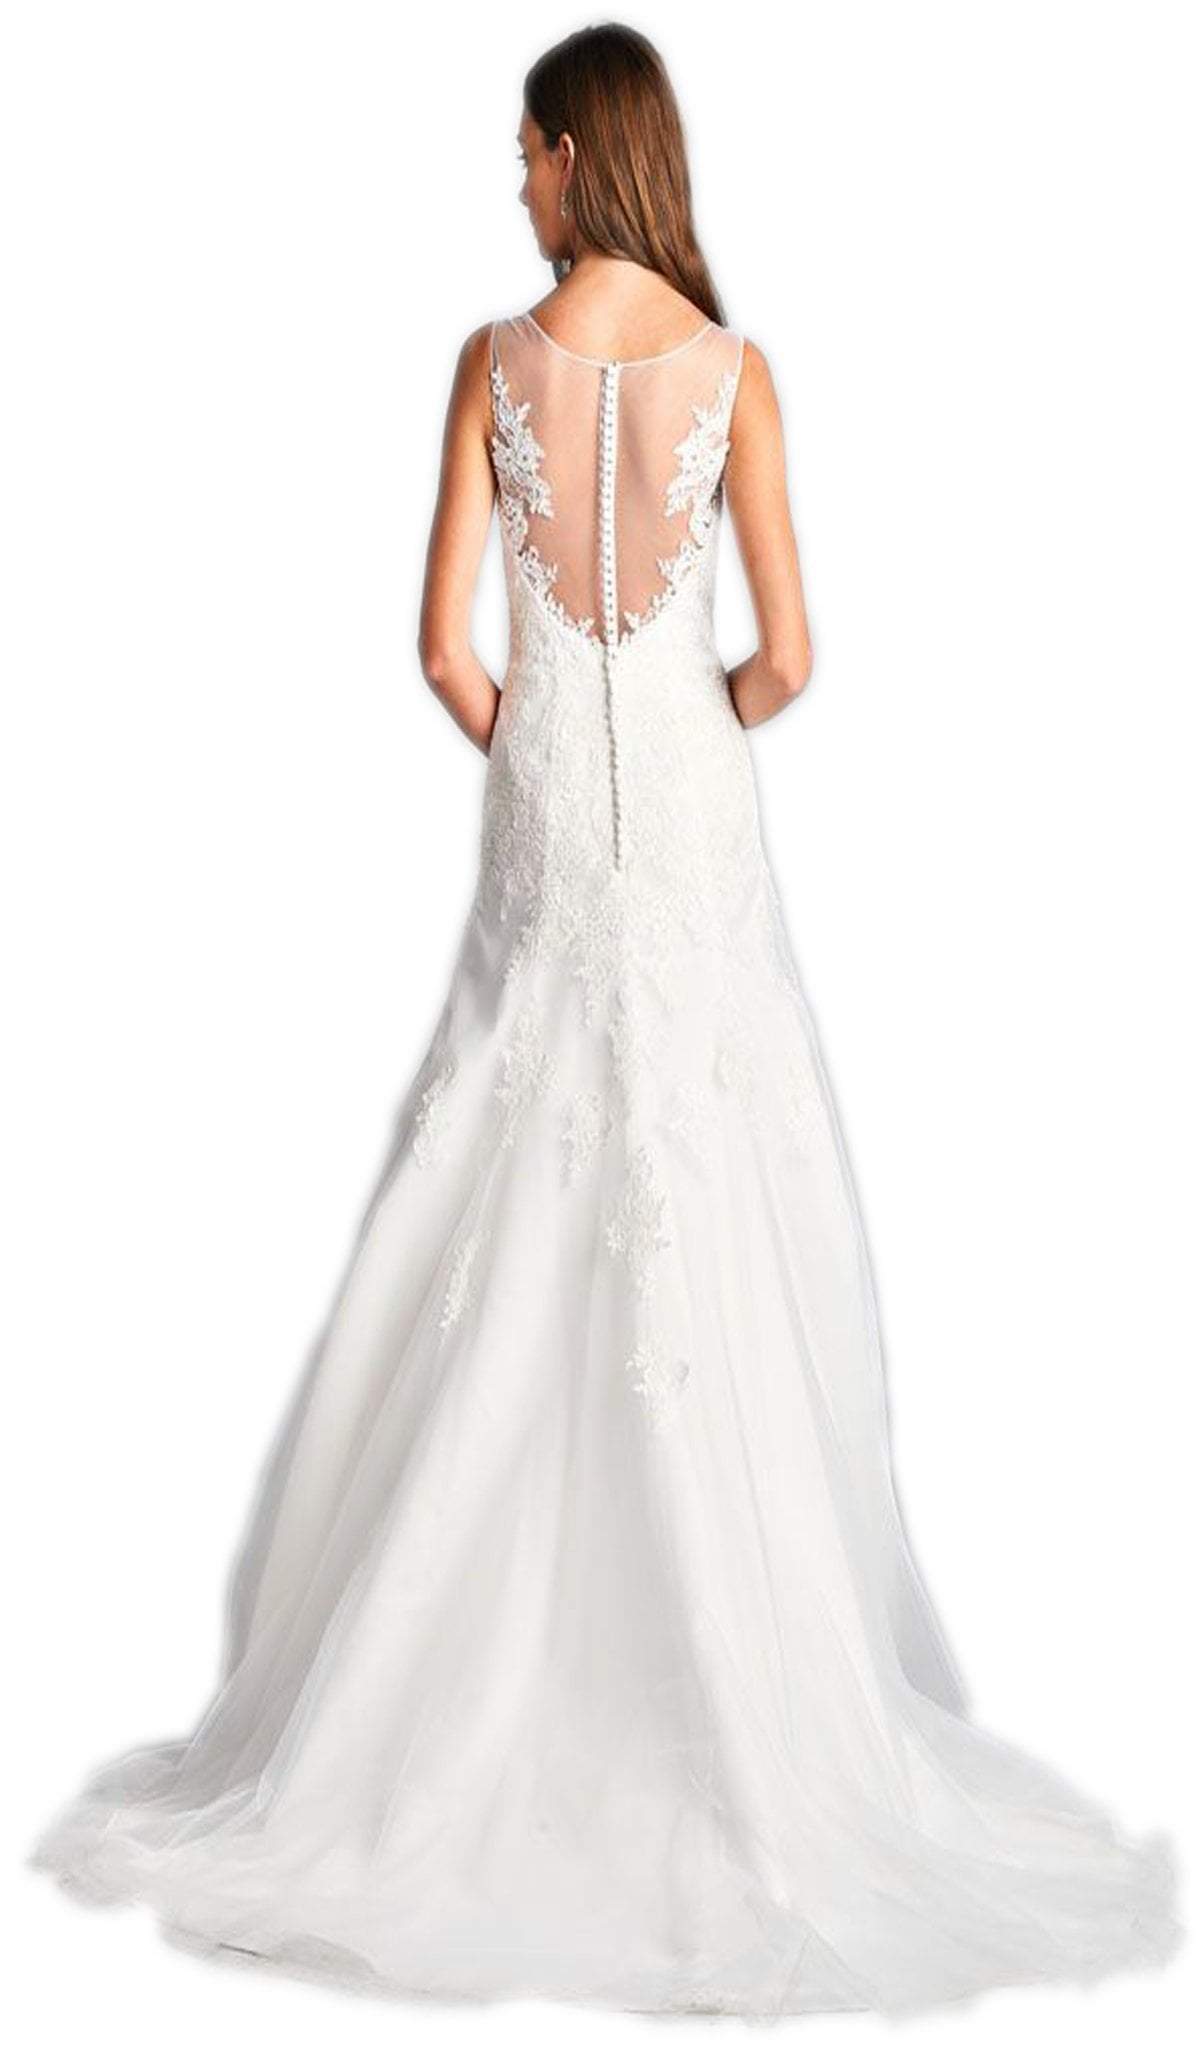 Lace Applique A-line Wedding Gown Wedding Dresses